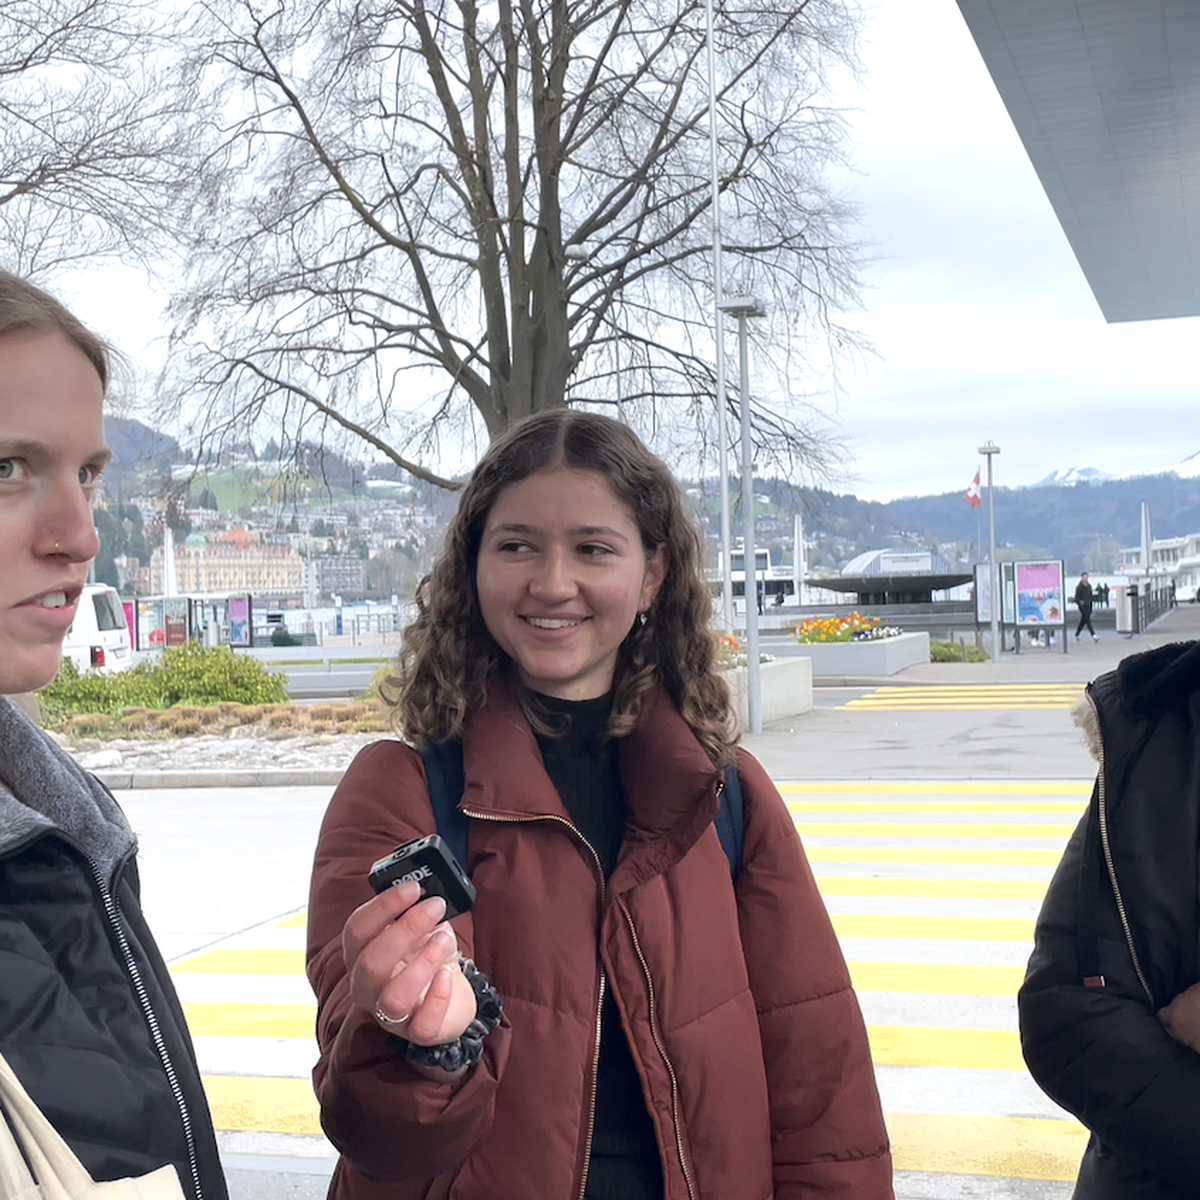 Luzerner Jugendliche: Zur Sicherheit ein Messer im Sack?